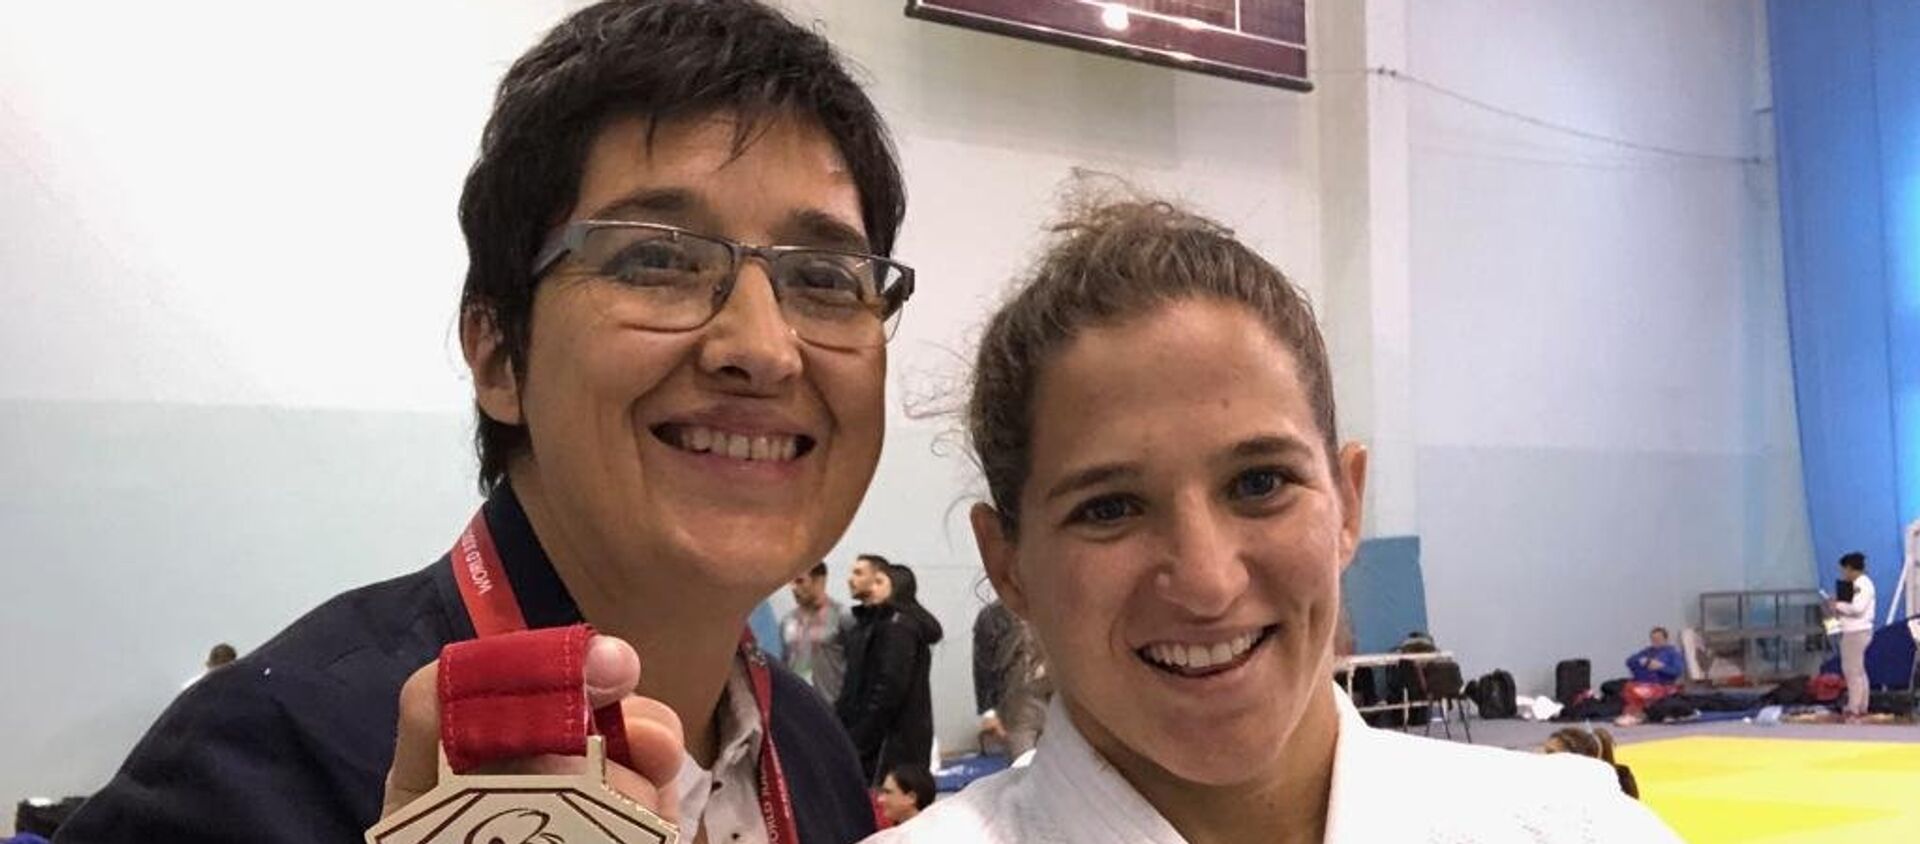 Laura Martinel y Paula Pareto tras obtener una medalla de oro en Rusia, en marzo de 2019 - Sputnik Mundo, 1920, 06.04.2019